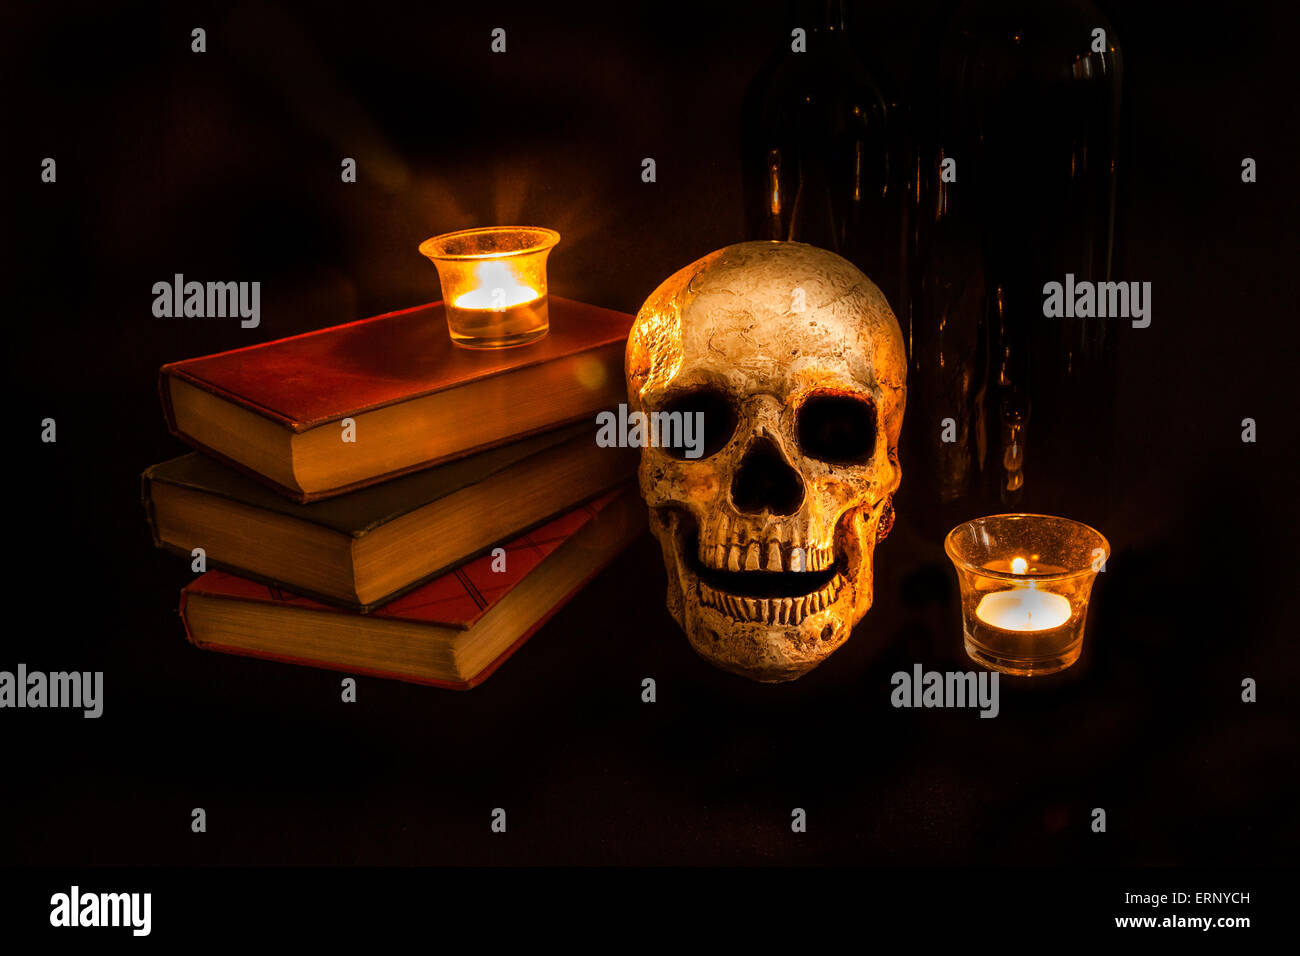 Un cranio vintage si siede accanto a una pila di vecchi romanzi e bottiglie di vino; immagine creata con una luce tecnica di pittura Foto Stock